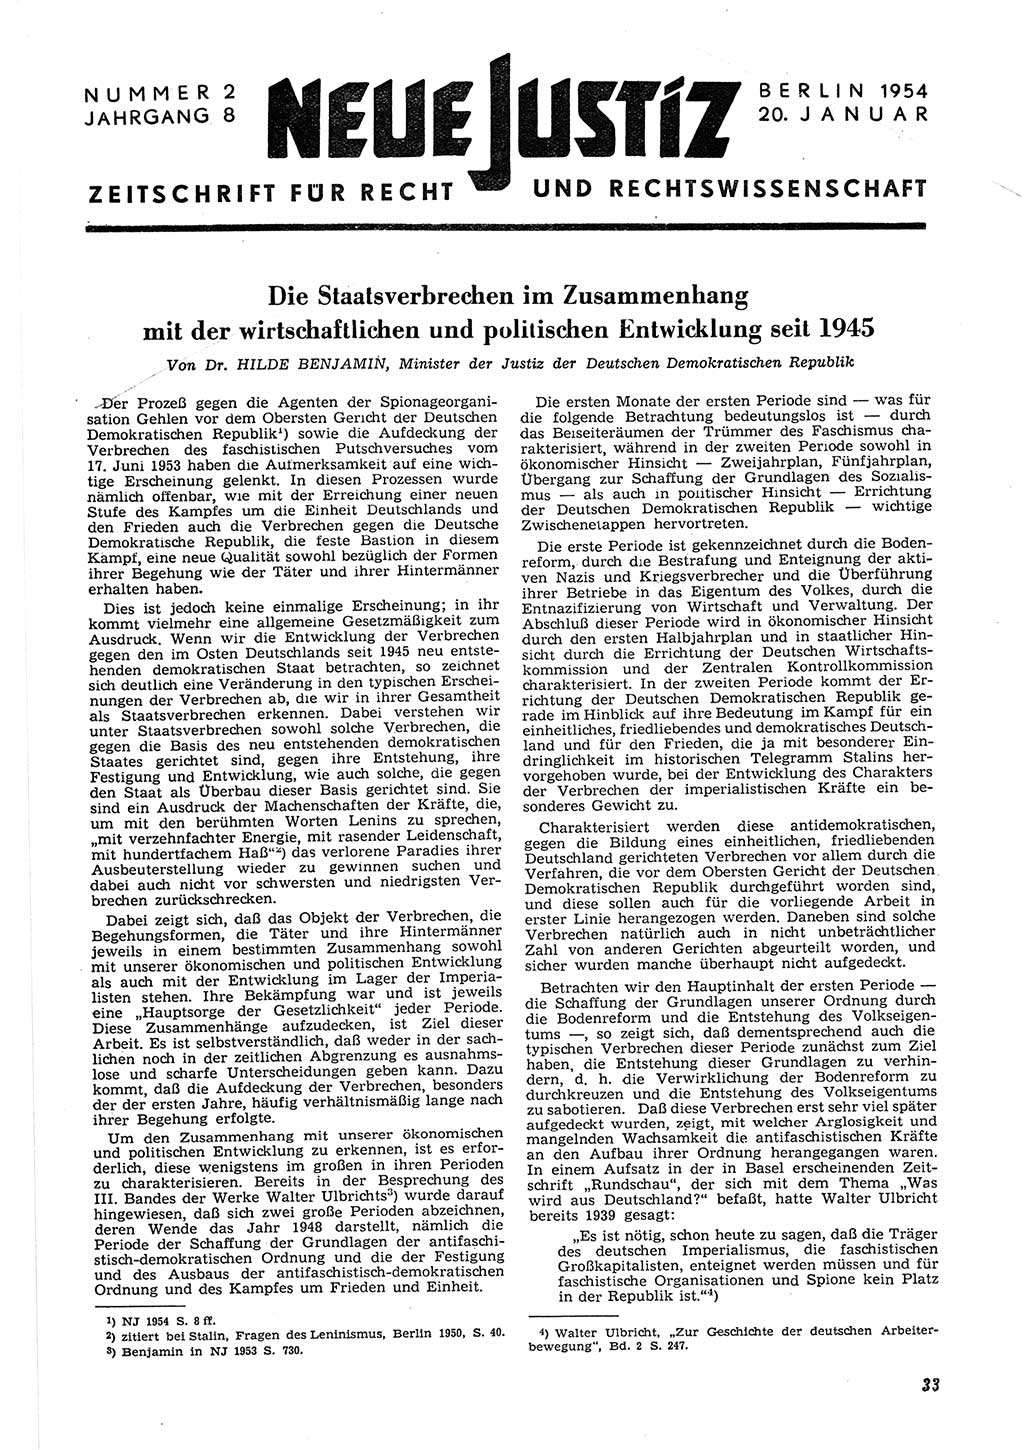 Neue Justiz (NJ), Zeitschrift für Recht und Rechtswissenschaft [Deutsche Demokratische Republik (DDR)], 8. Jahrgang 1954, Seite 33 (NJ DDR 1954, S. 33)